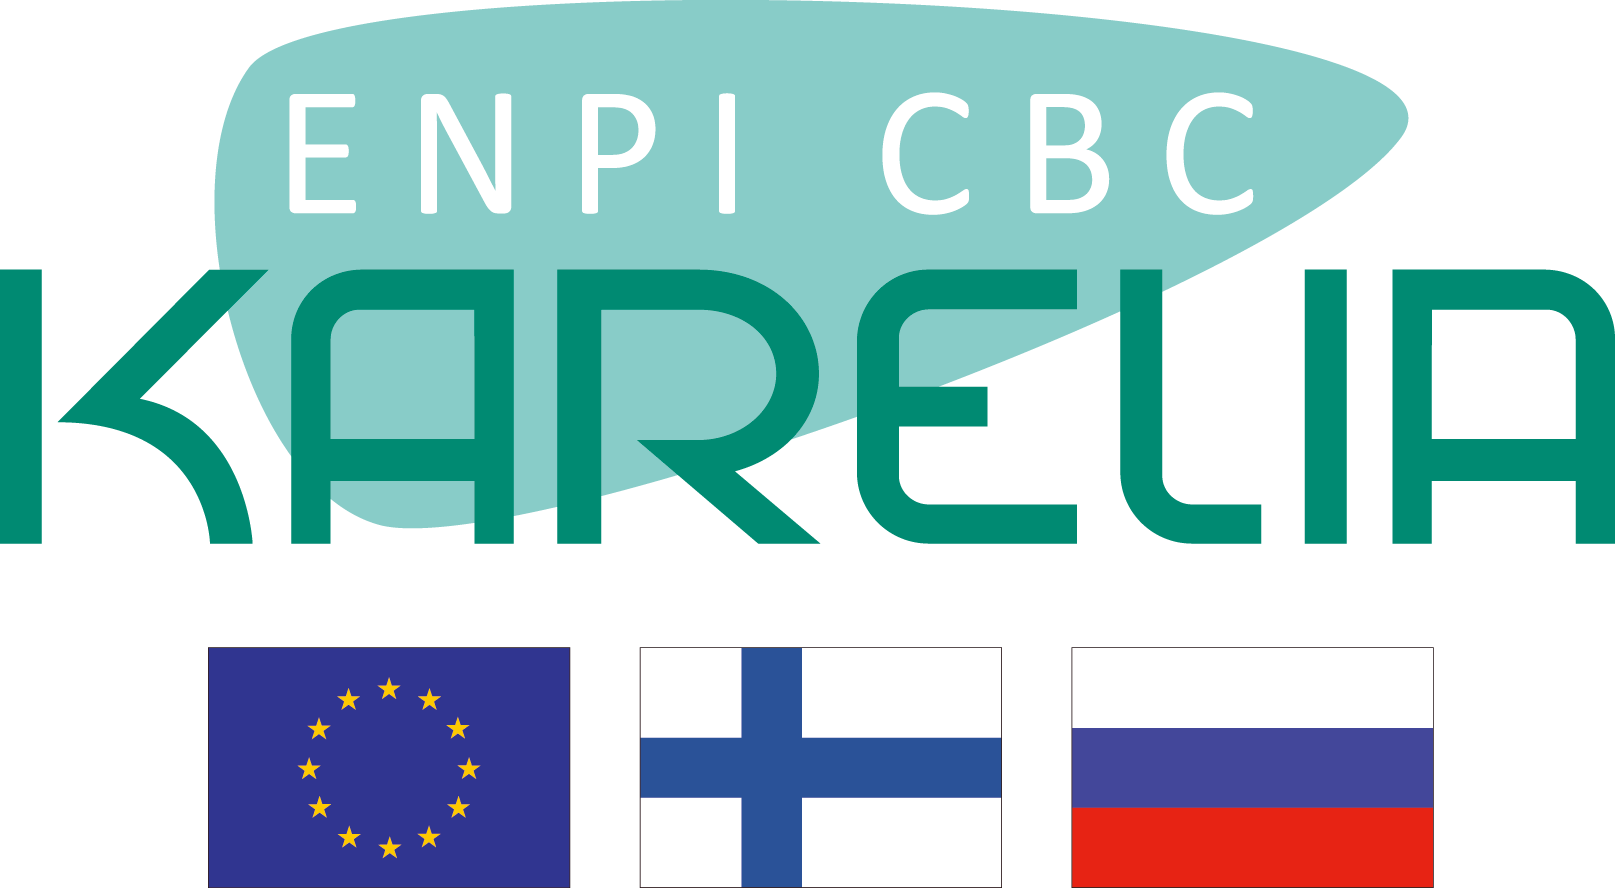 ENPI Karelia CBC